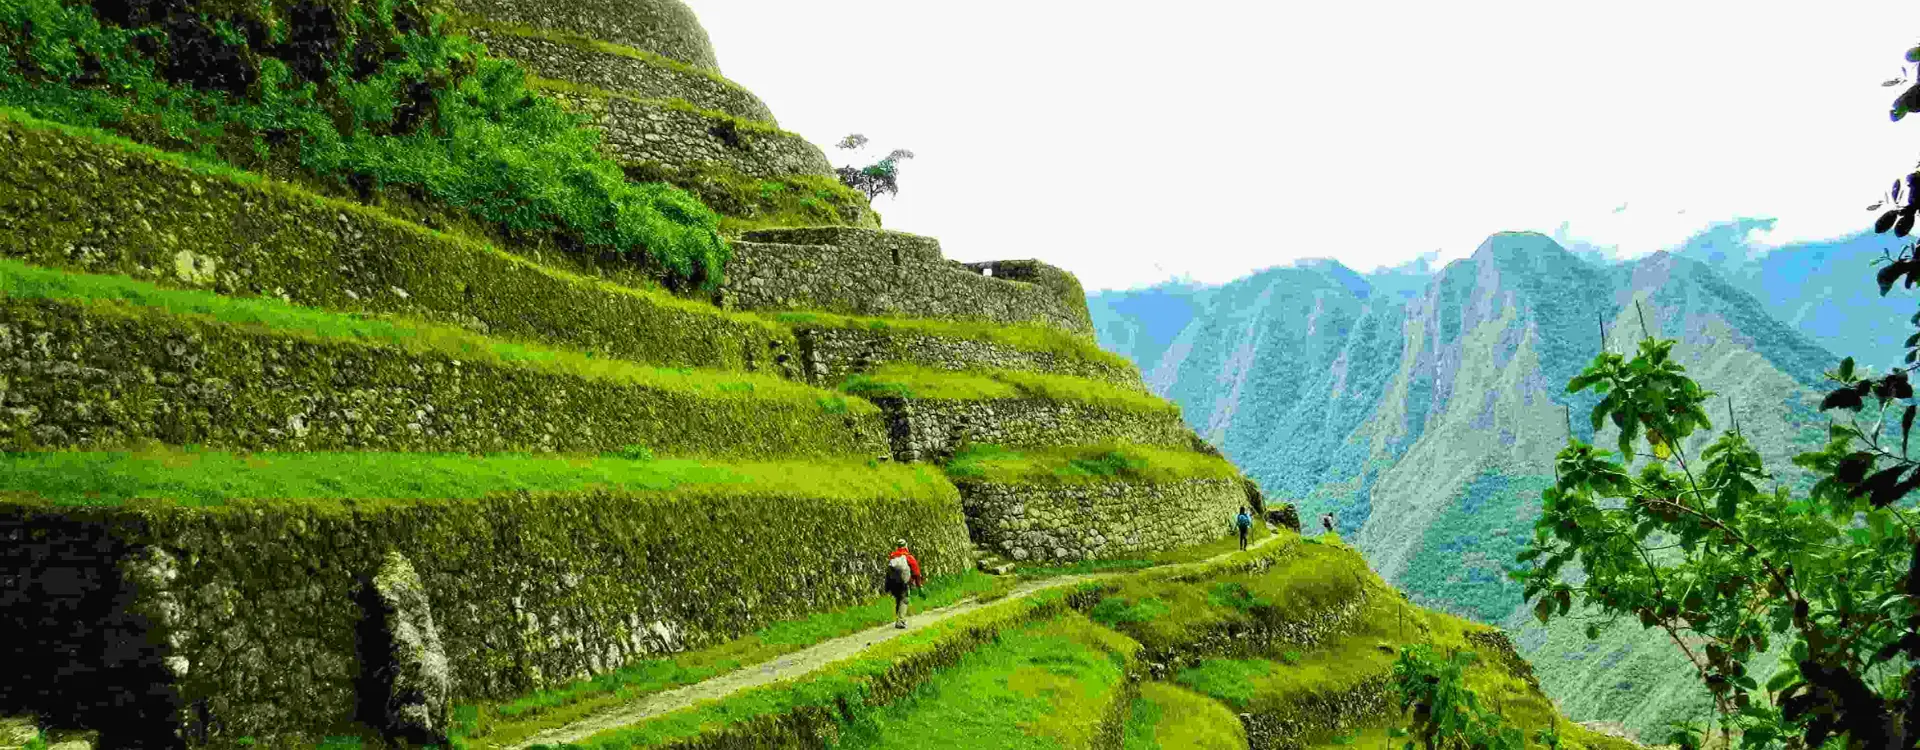 Intipata Inca Trail | Ultimate trekking